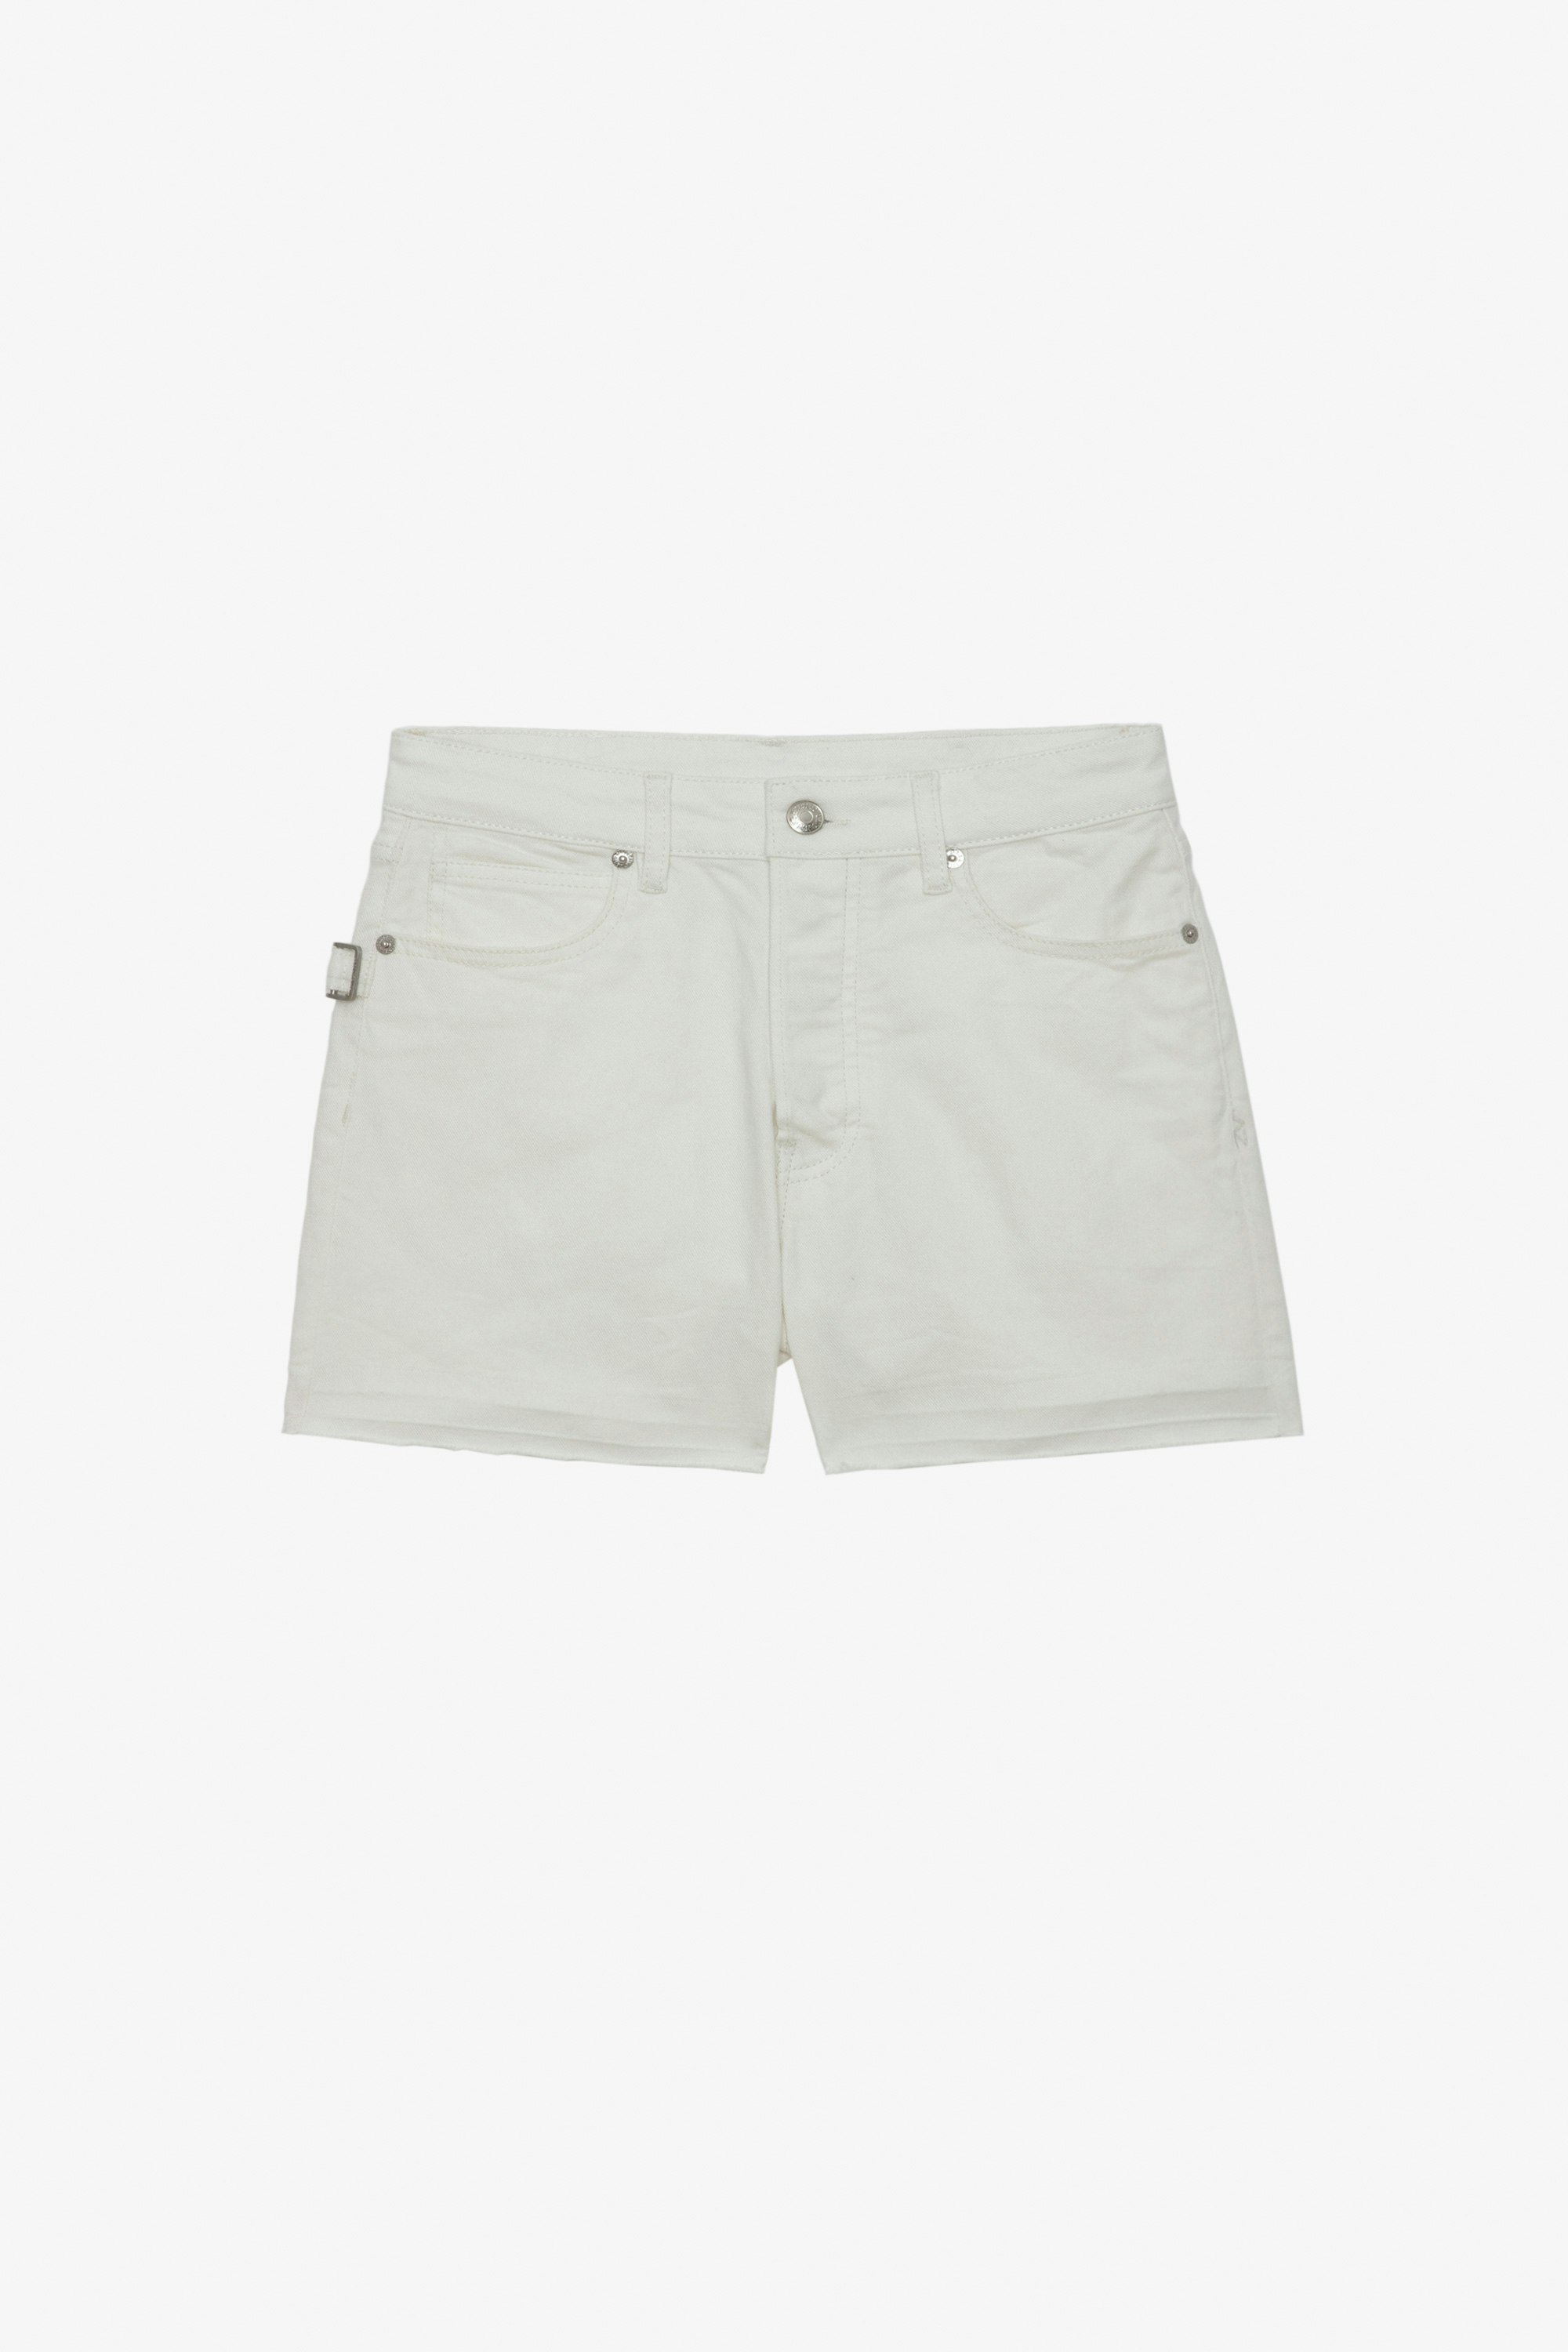 Short Sissi Denim - Short en denim blanc à poches, détails surpiqués et bords bruts.